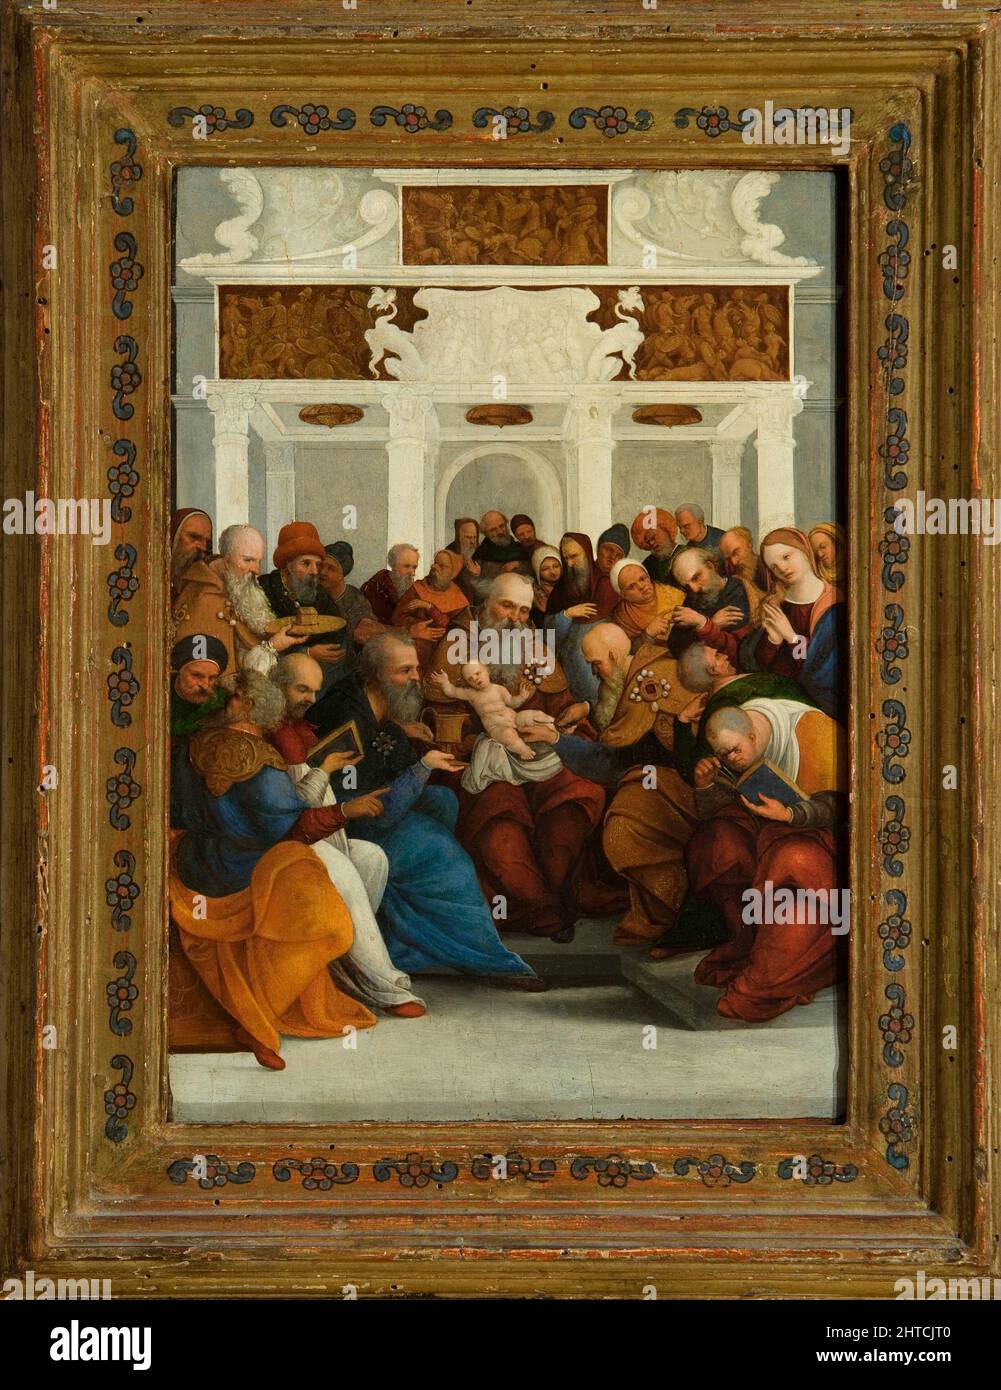 The circumcision of Christ, ca 1522. Found in the Collection of the Fondazione Cini, Venezia. Stock Photo